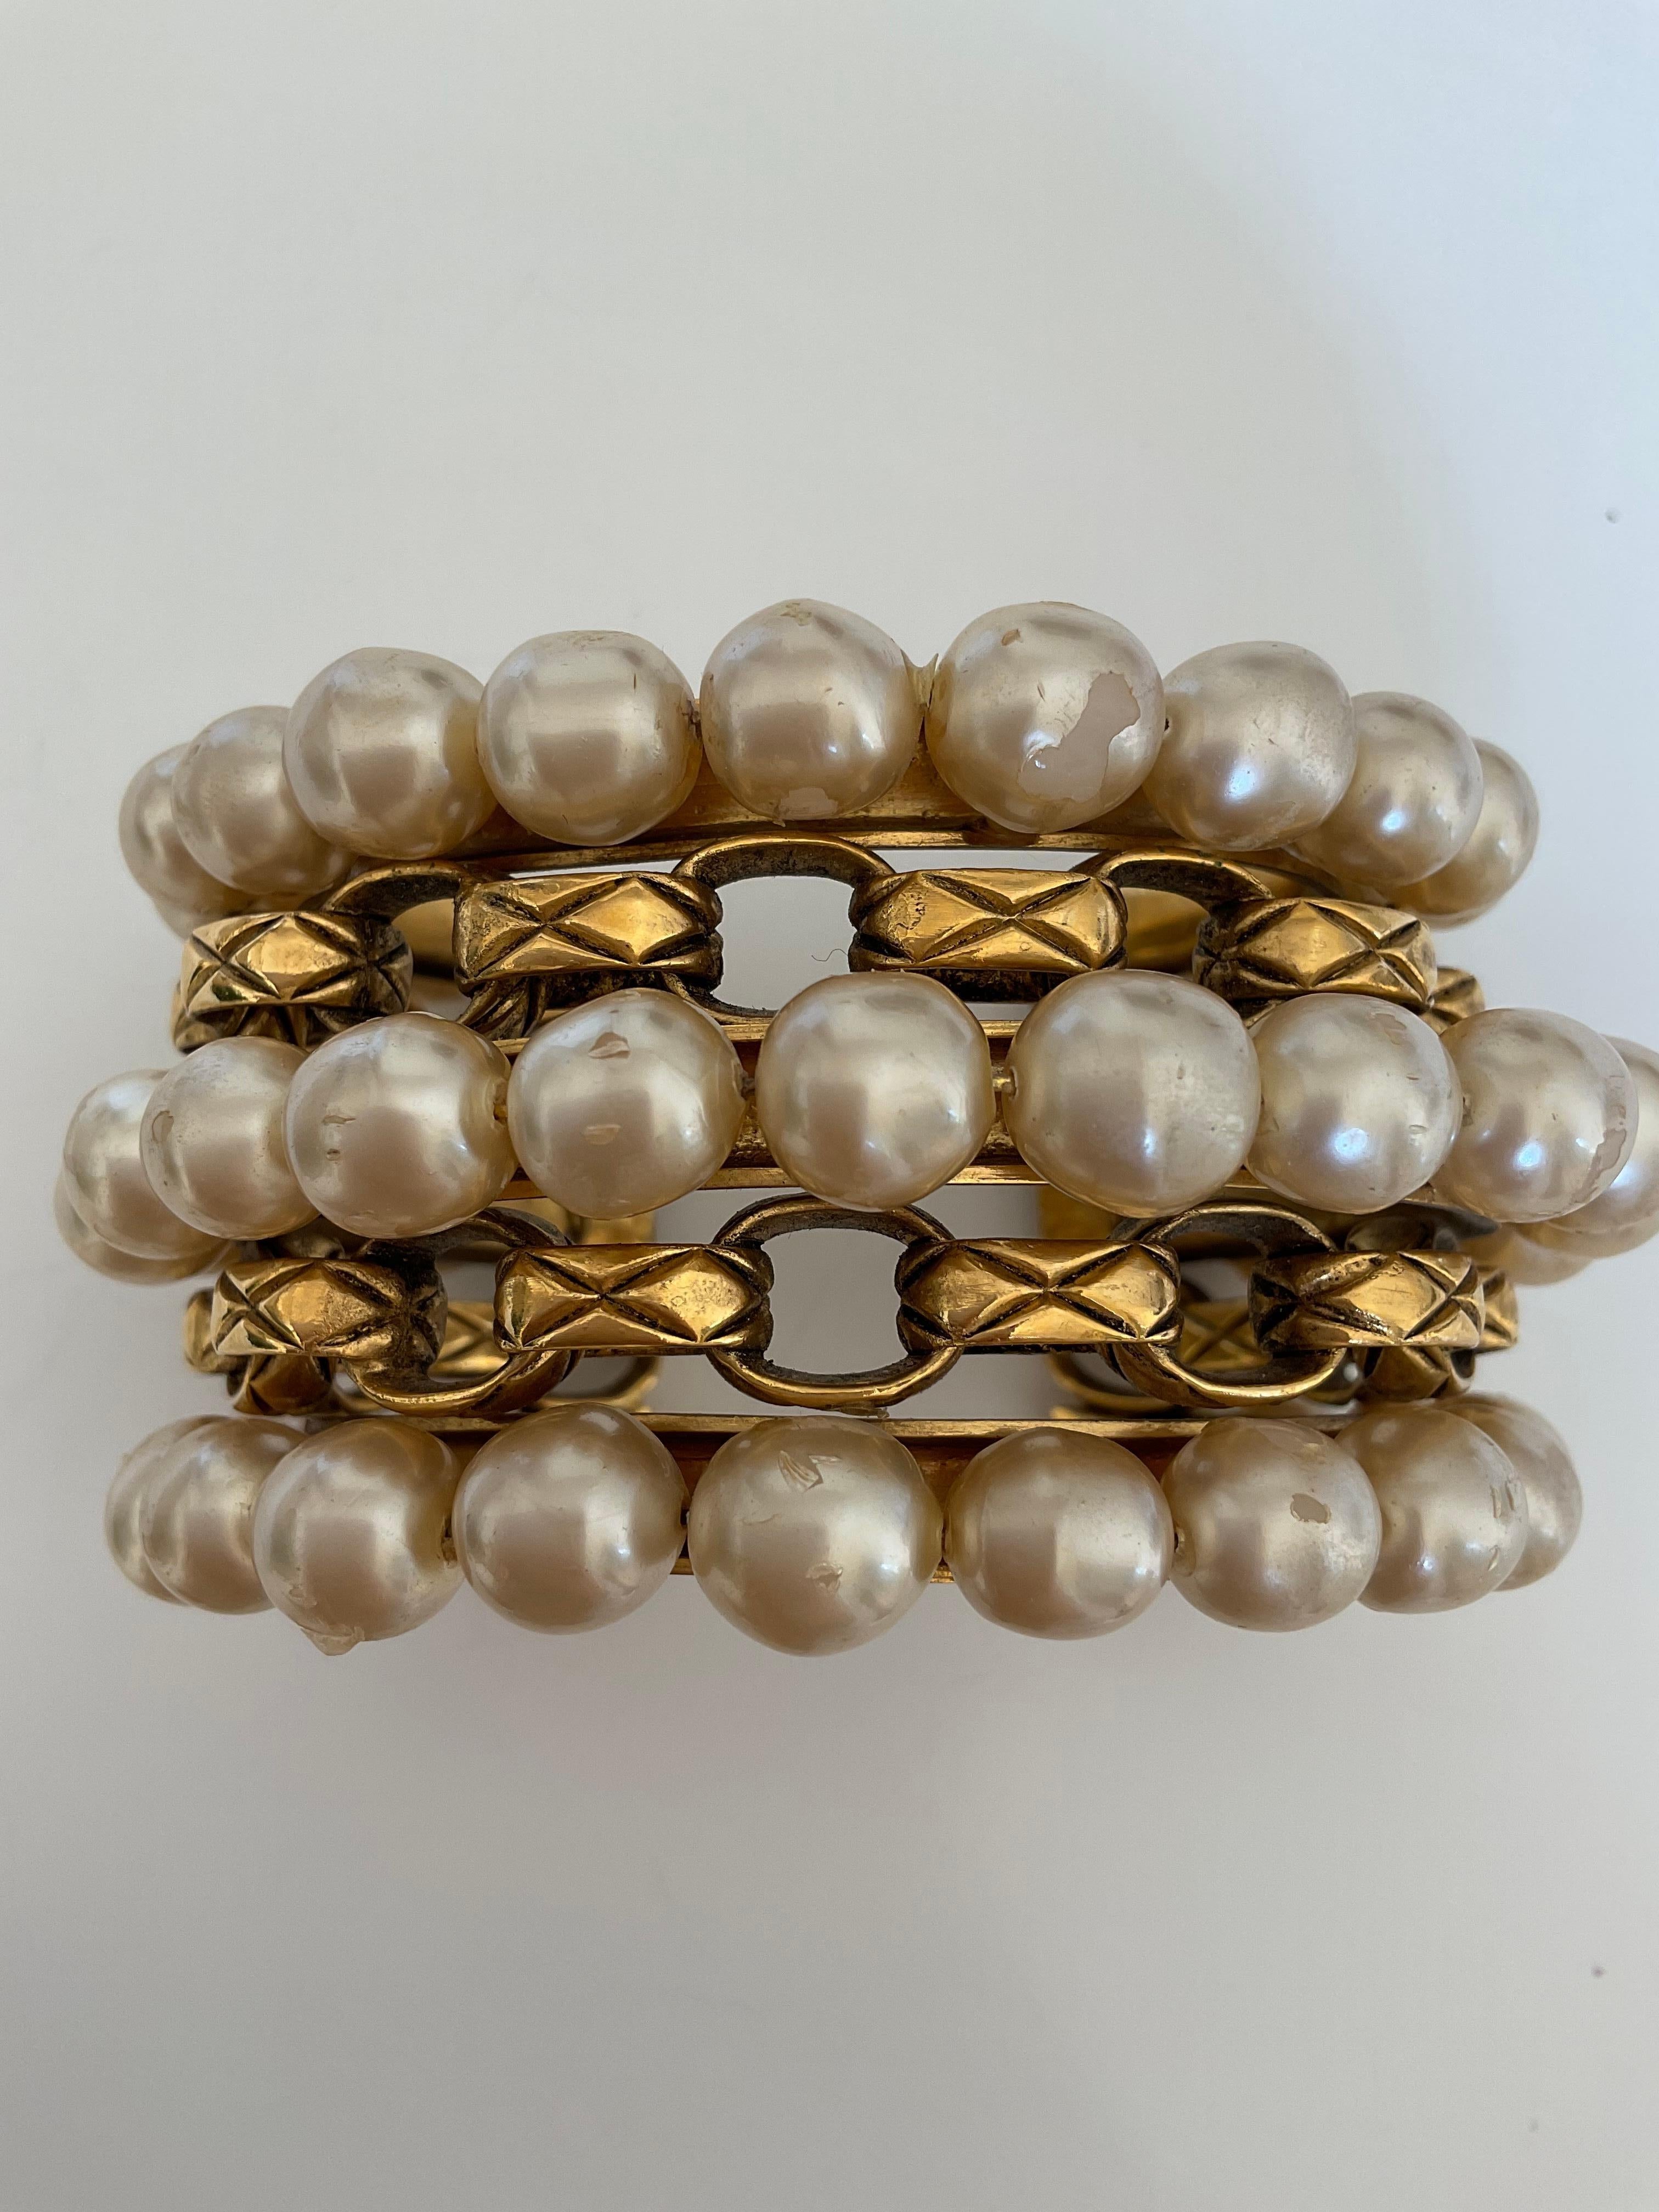 Cette pièce des années 80 est une manchette Vintage Chanel en métal doré. Ce bracelet rare est composé de trois rangs dorés de fausses perles en résine et de deux rangs de l'iconique chaîne matelassée connue de la Maison. La manchette haute couture